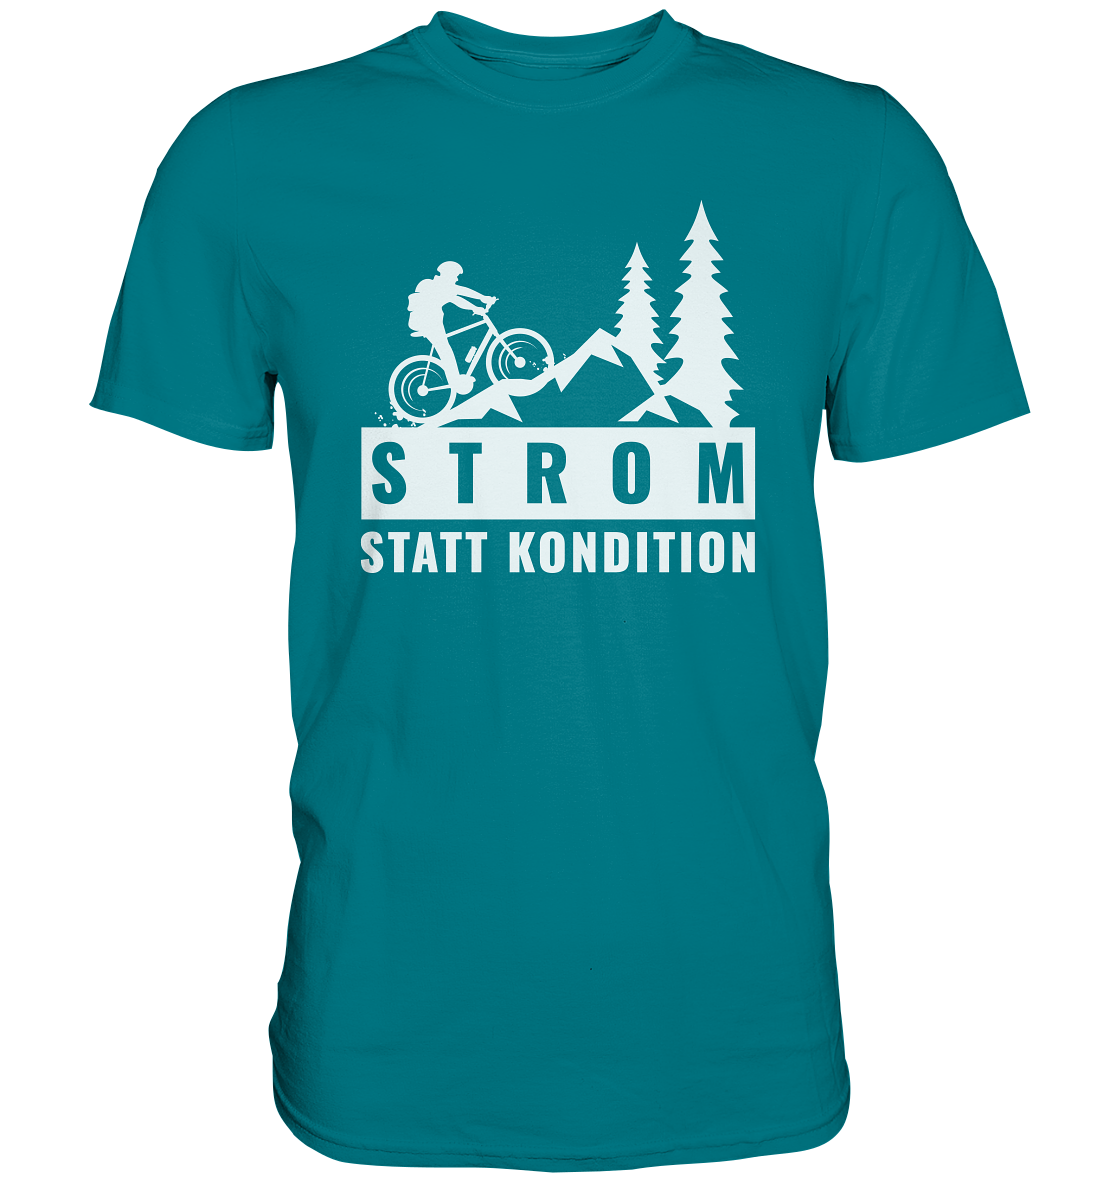 STROM STATT KONDITION - Premium Shirt